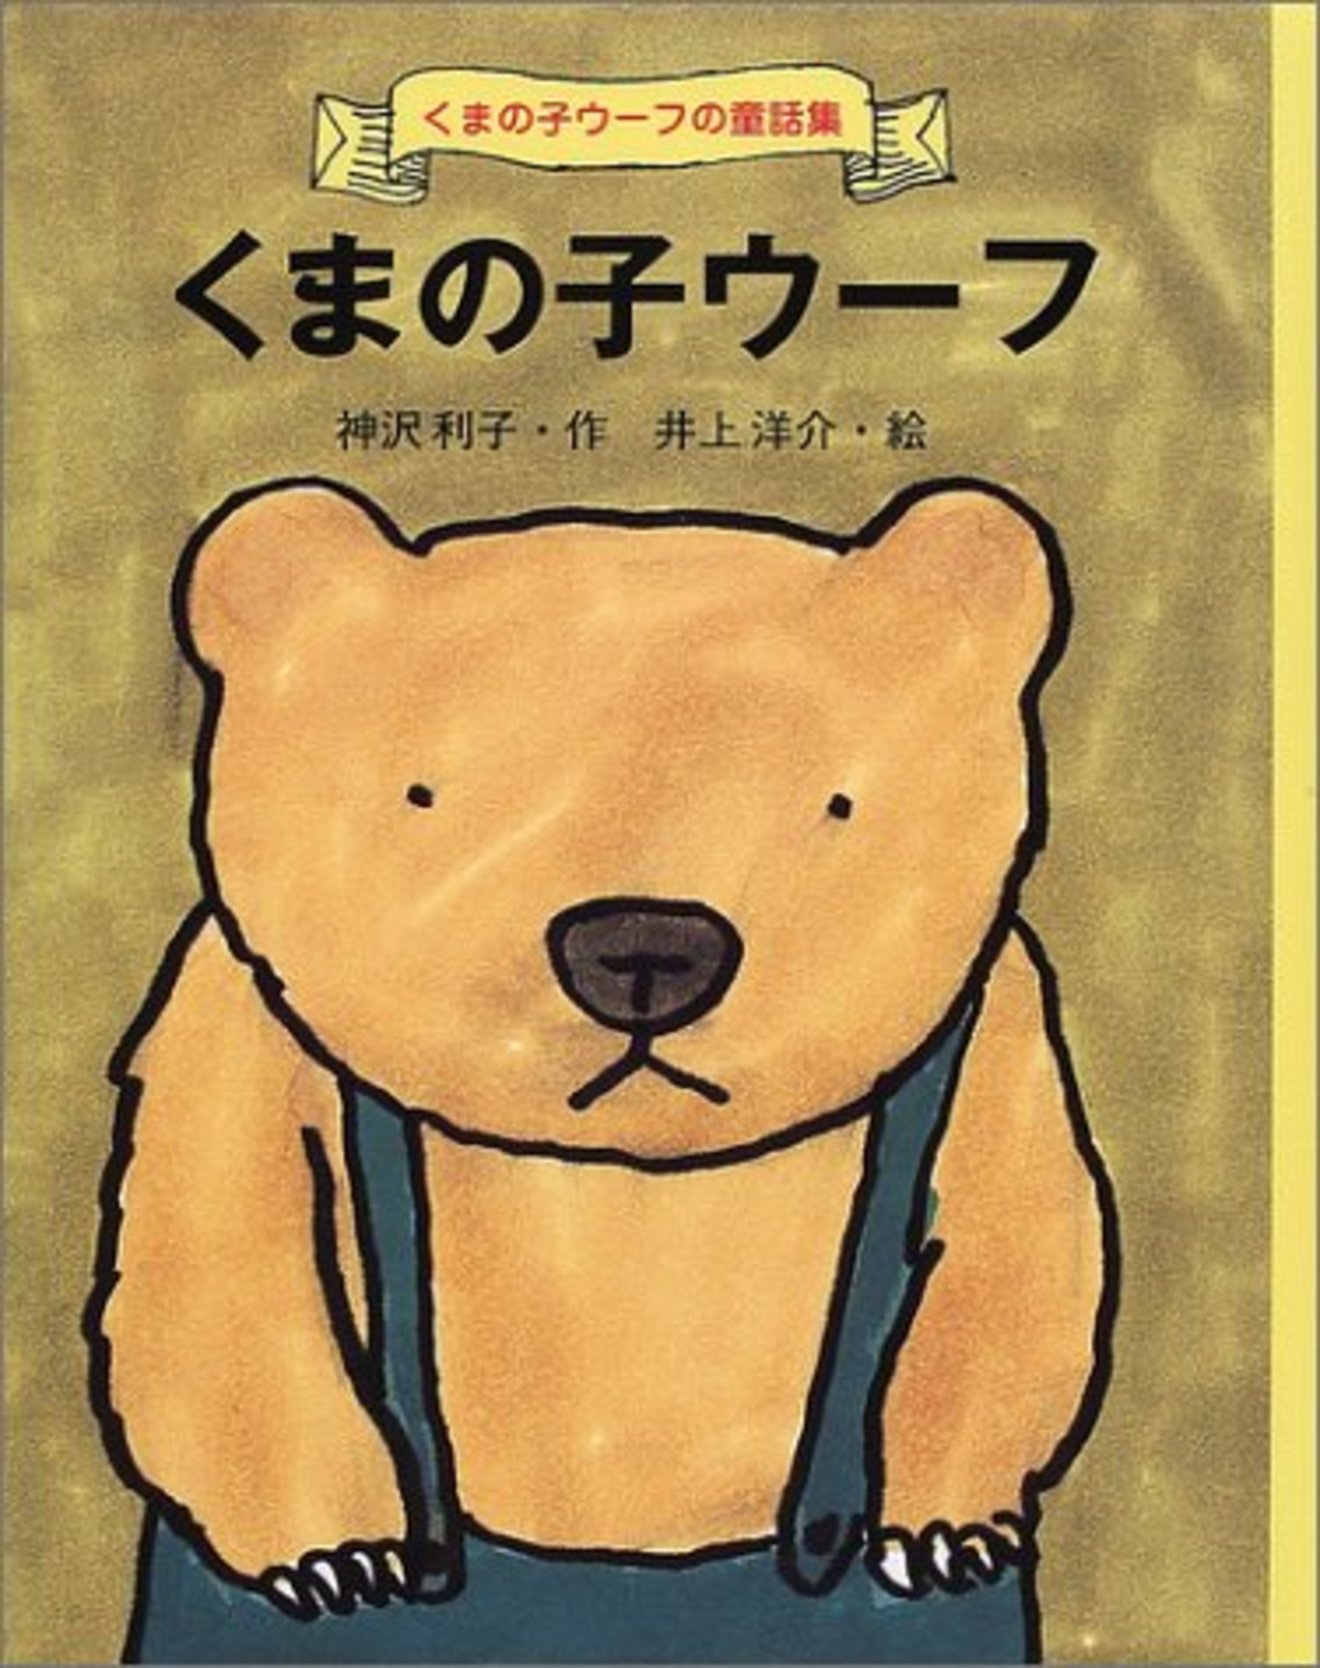 井上洋介がイラストを描くおすすめの絵本5選 くまの子ウーフ など 絵本 児童書も ホンシェルジュ